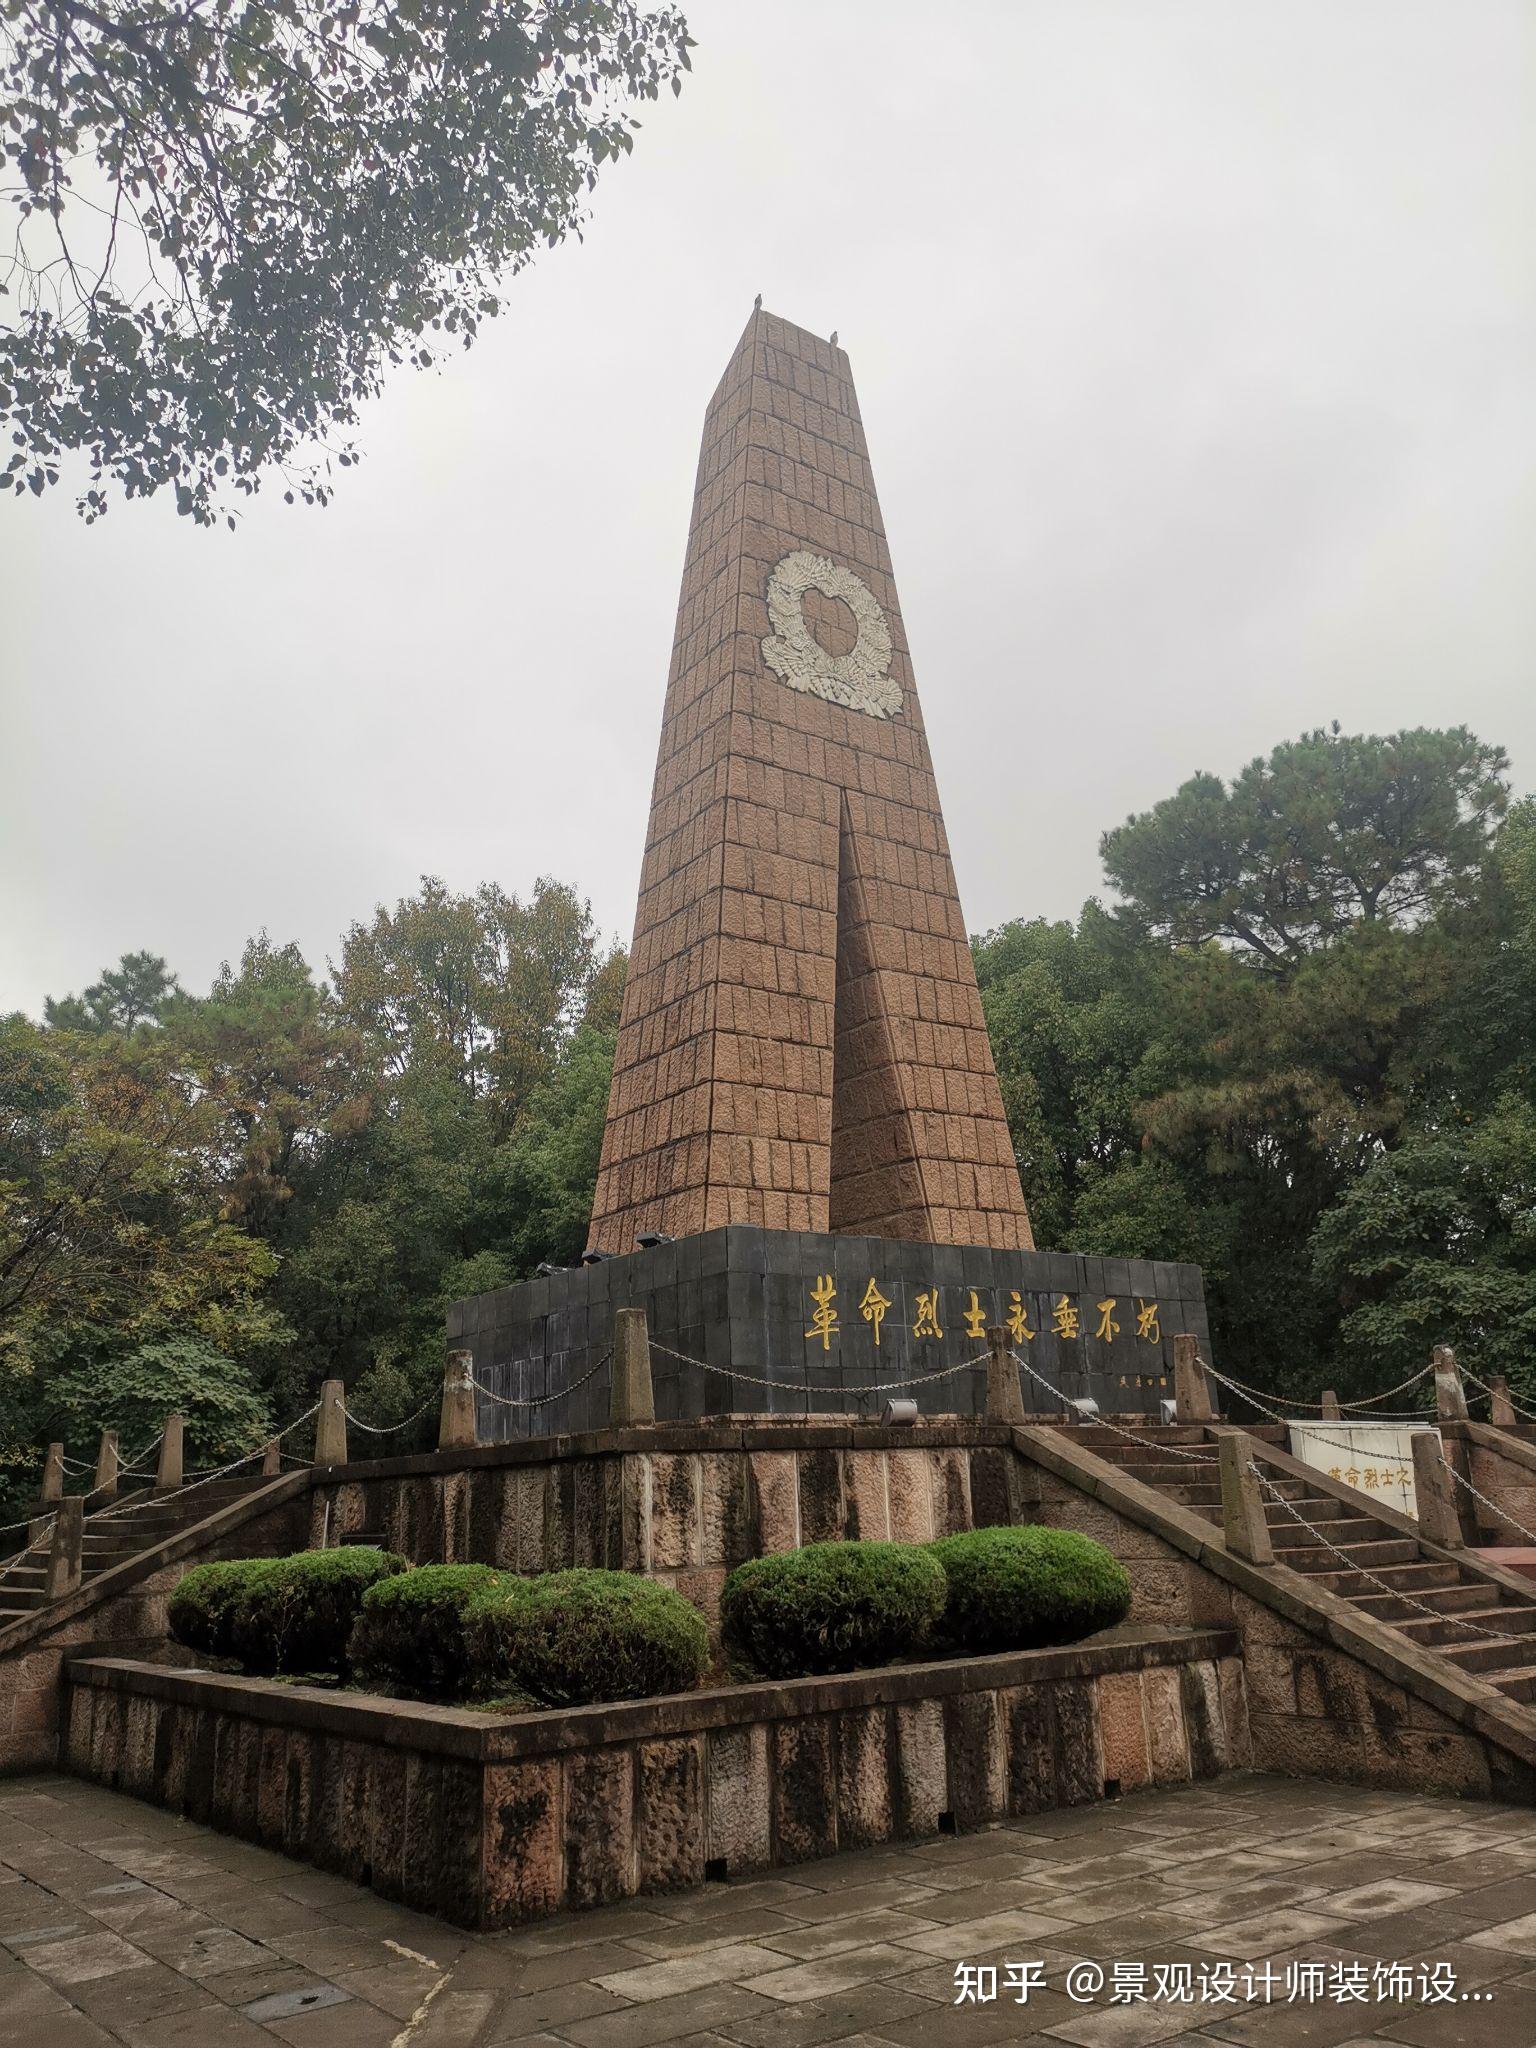 无锡市革命烈士陵园：在惠山北麓瞻仰永恒丰碑